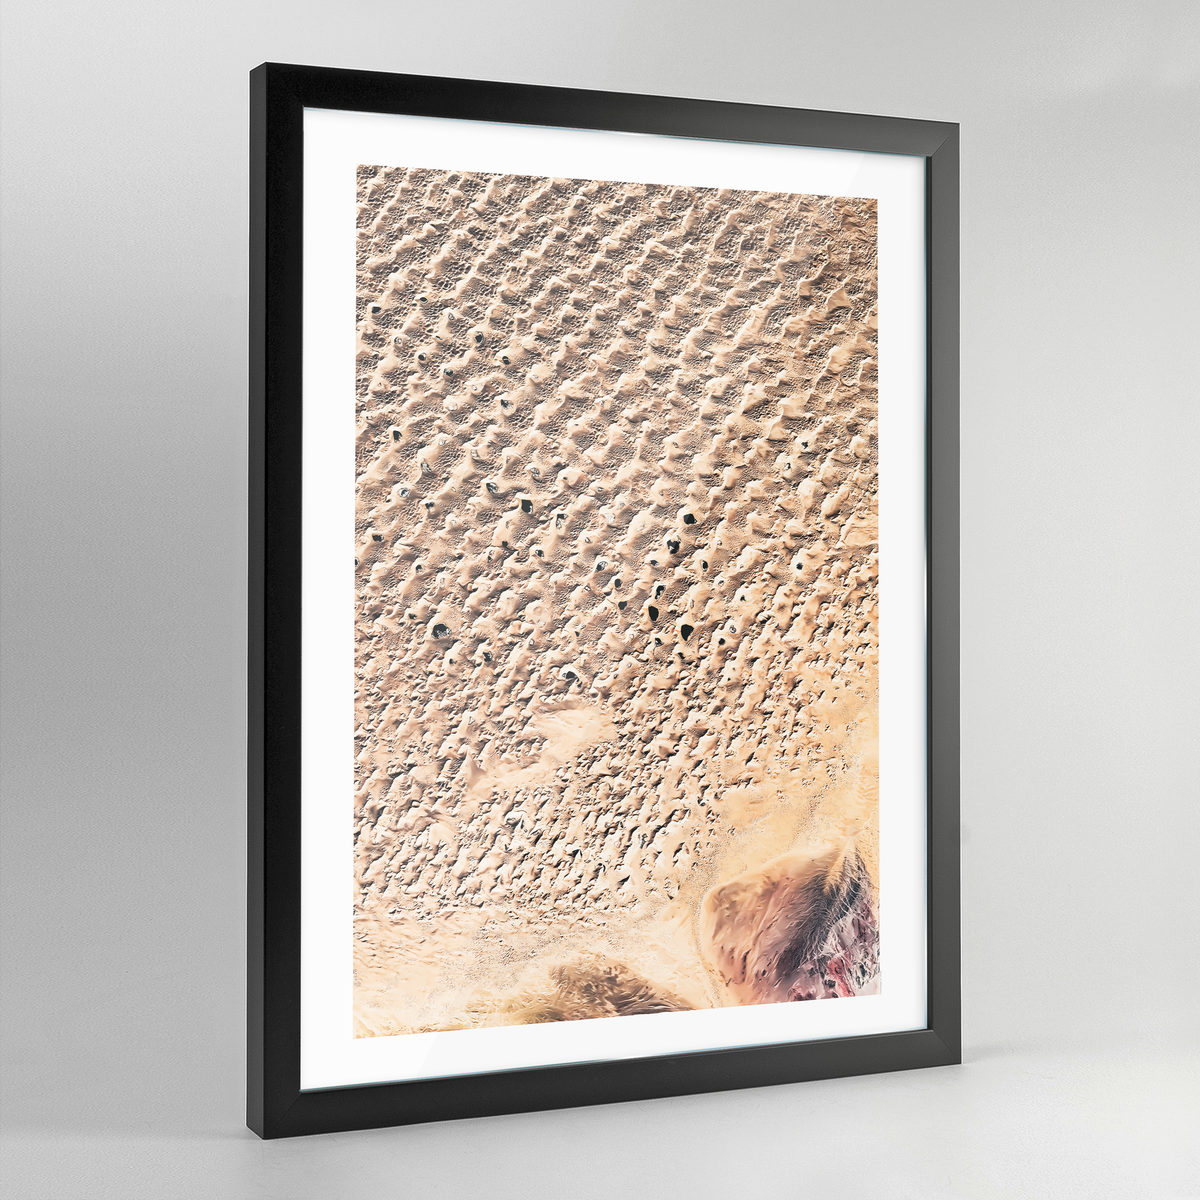 Gobi Desert Earth Photography Art Print - Framed